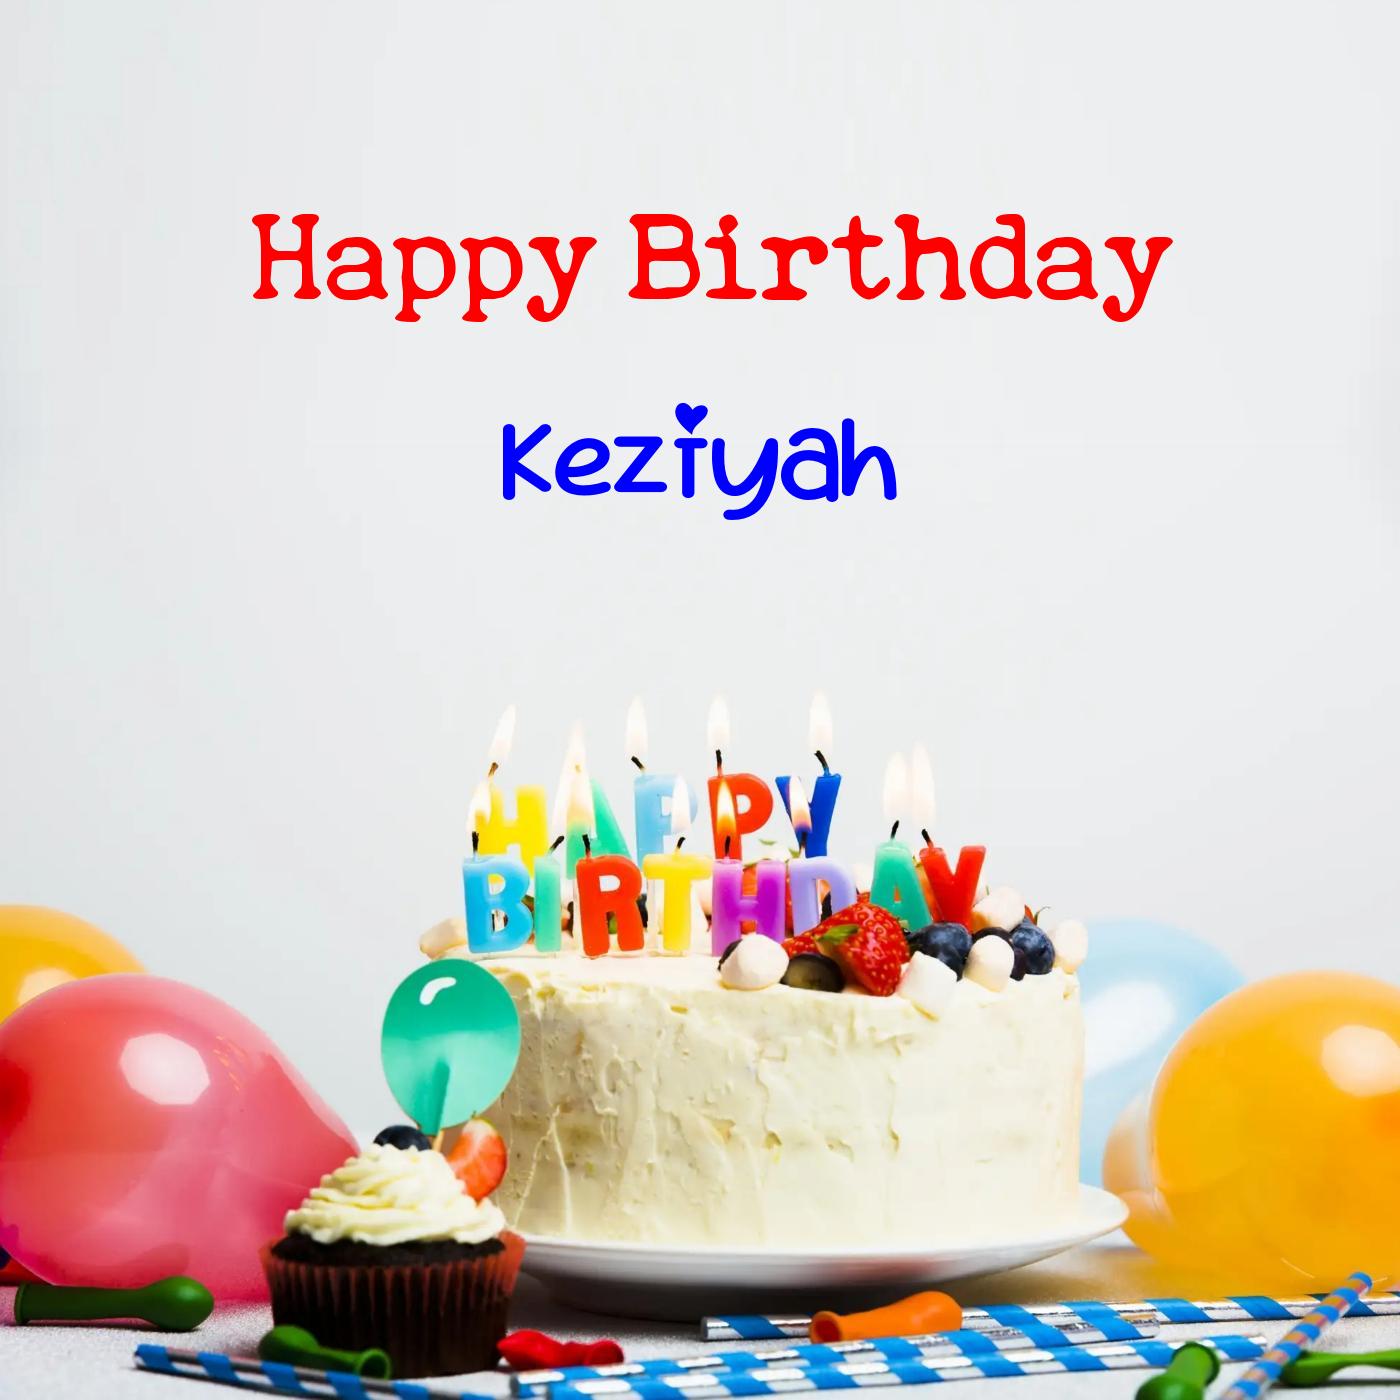 Happy Birthday Keziyah Cake Balloons Card